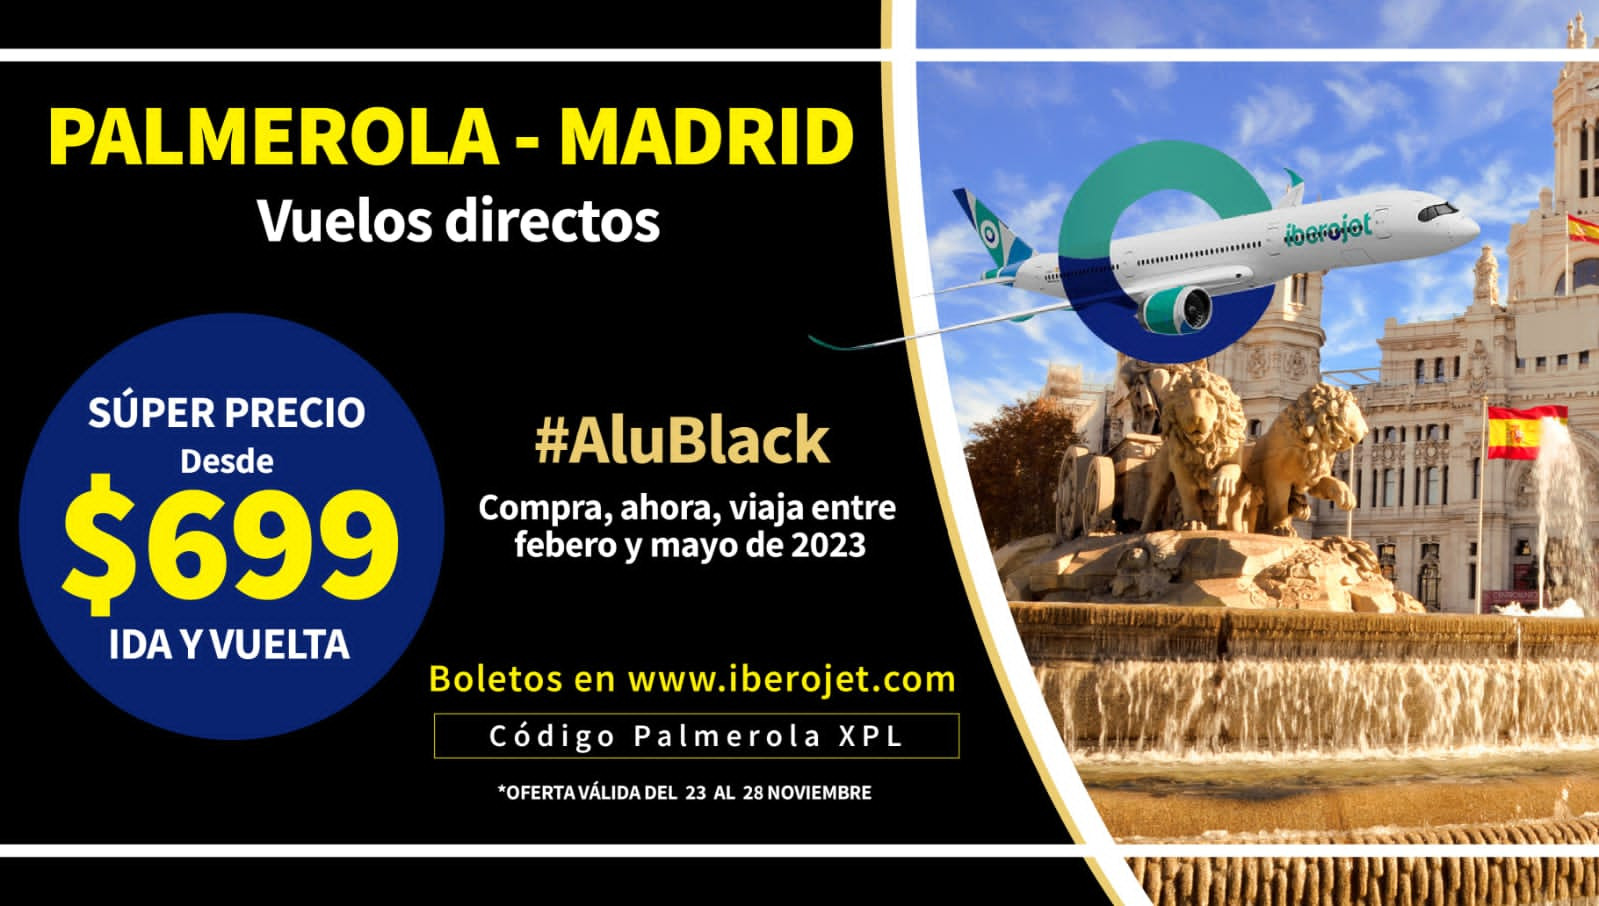 Histórico: Vuelos directos Palmerola - Madrid desde $699 ida y regreso con Iberojet